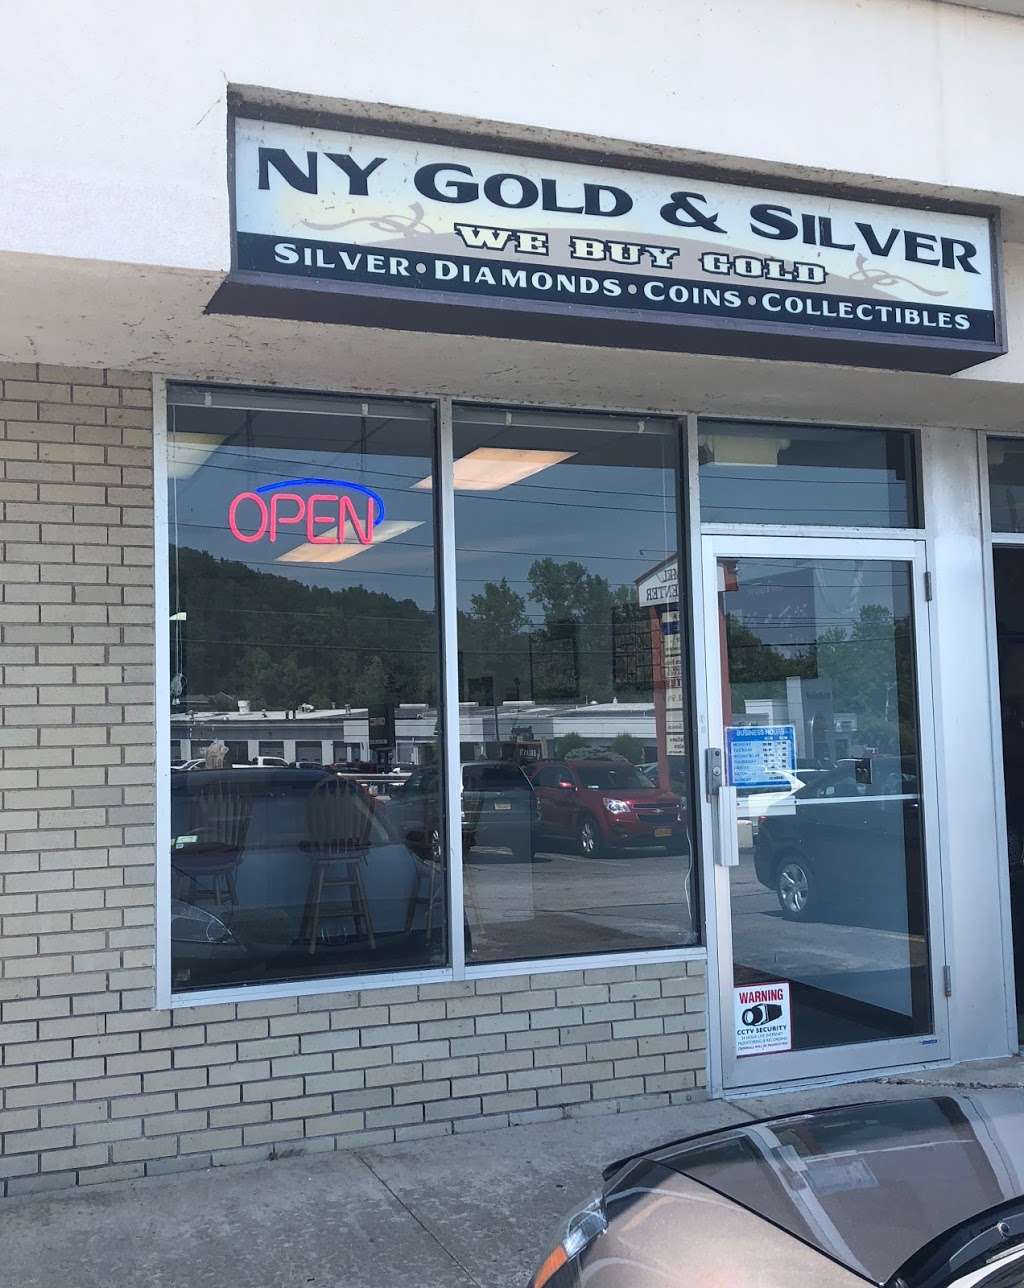 NY Gold and Silver Buyers | 1961 US-6 #5, Carmel Hamlet, NY 10512, USA | Phone: (845) 228-4653